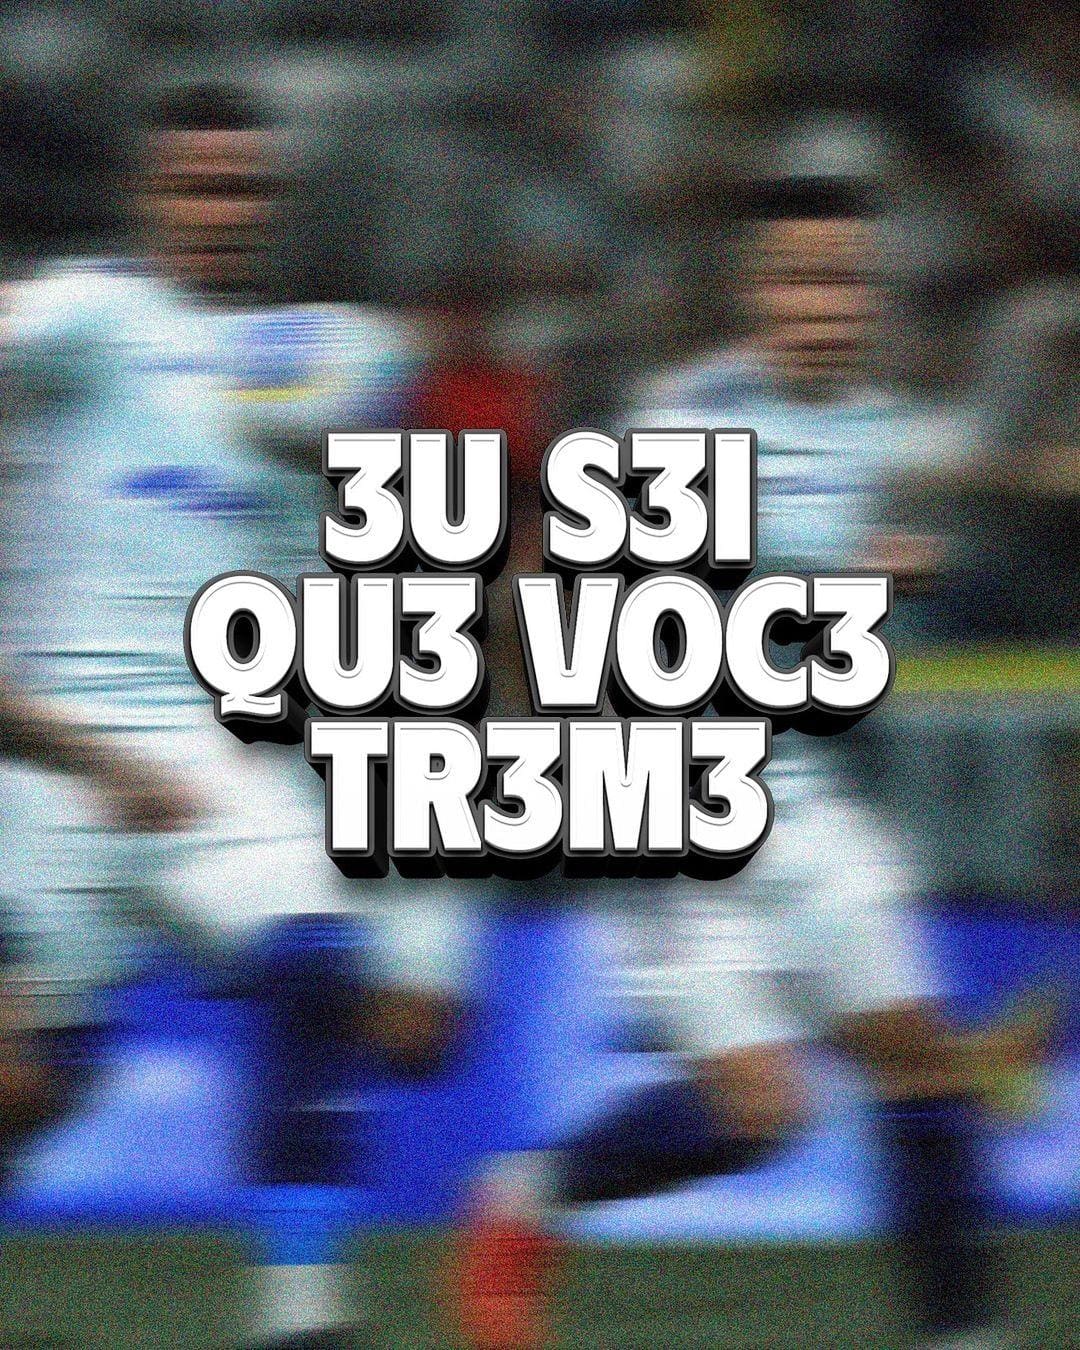 Galo provoca Cruzeiro com uma série de publicações nas redes sociais